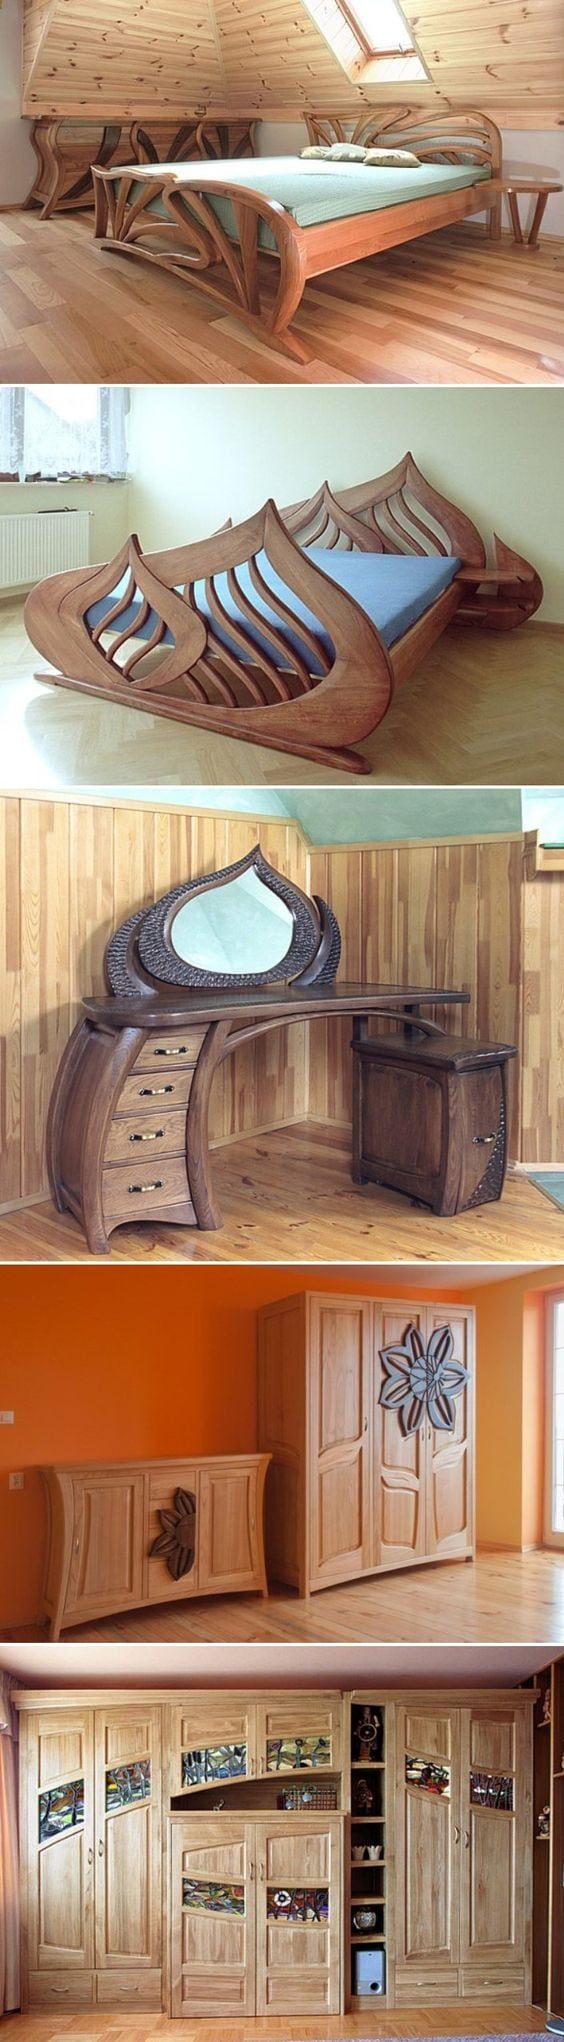 Удивительная мебель польского плотника